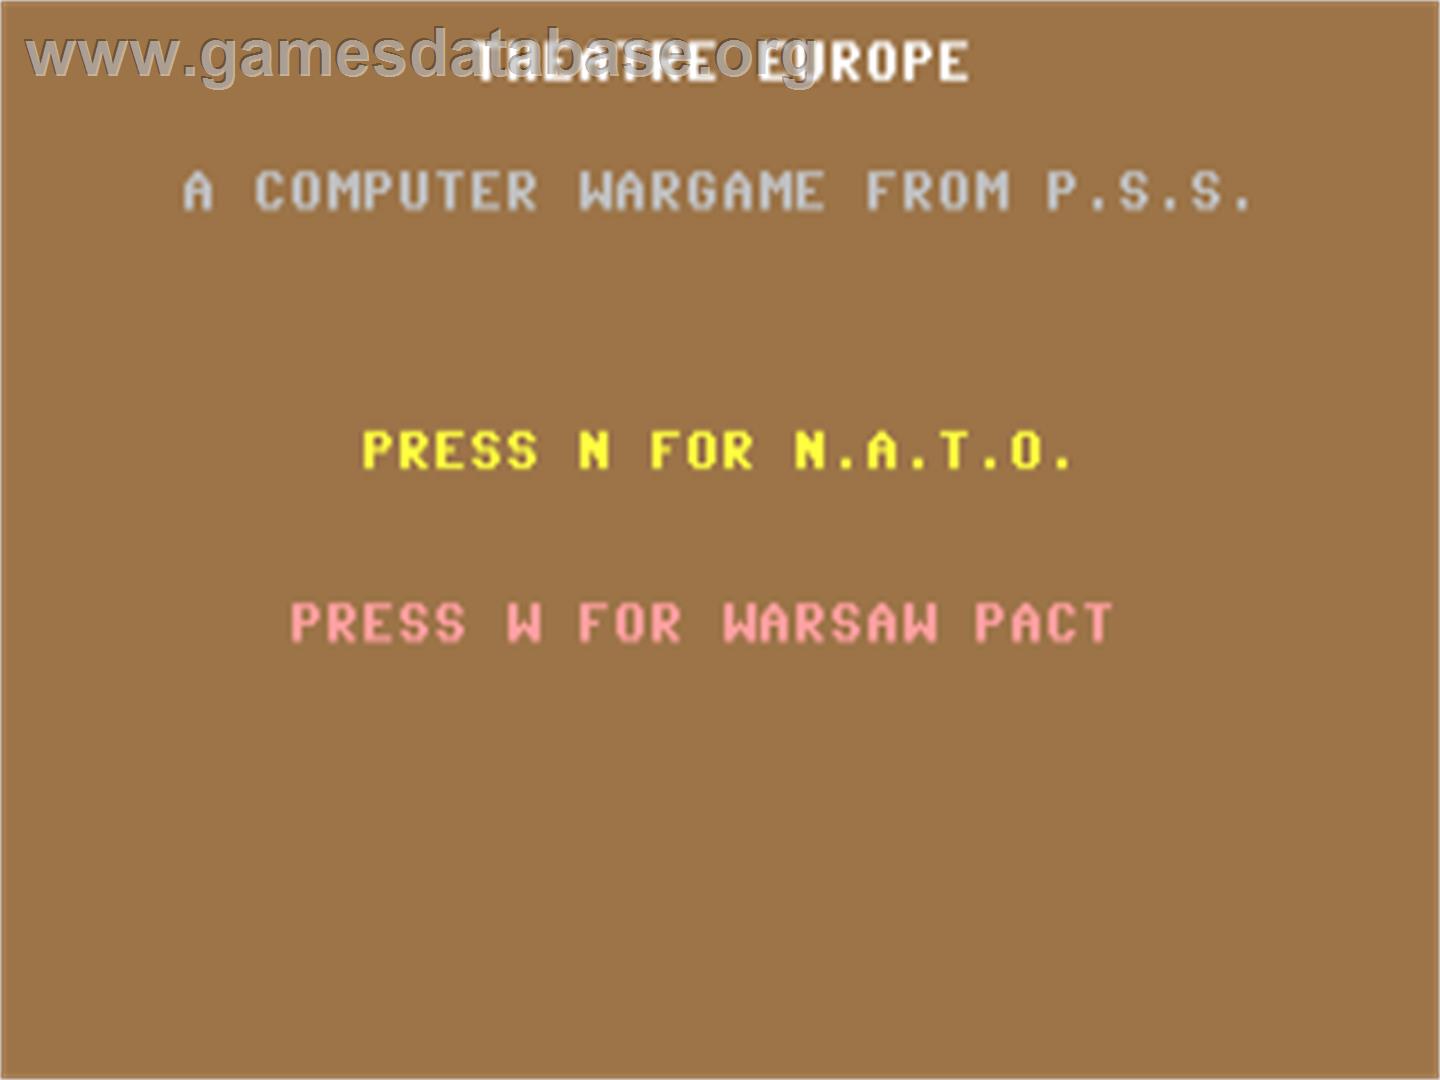 Theatre Europe - Commodore 64 - Artwork - Title Screen